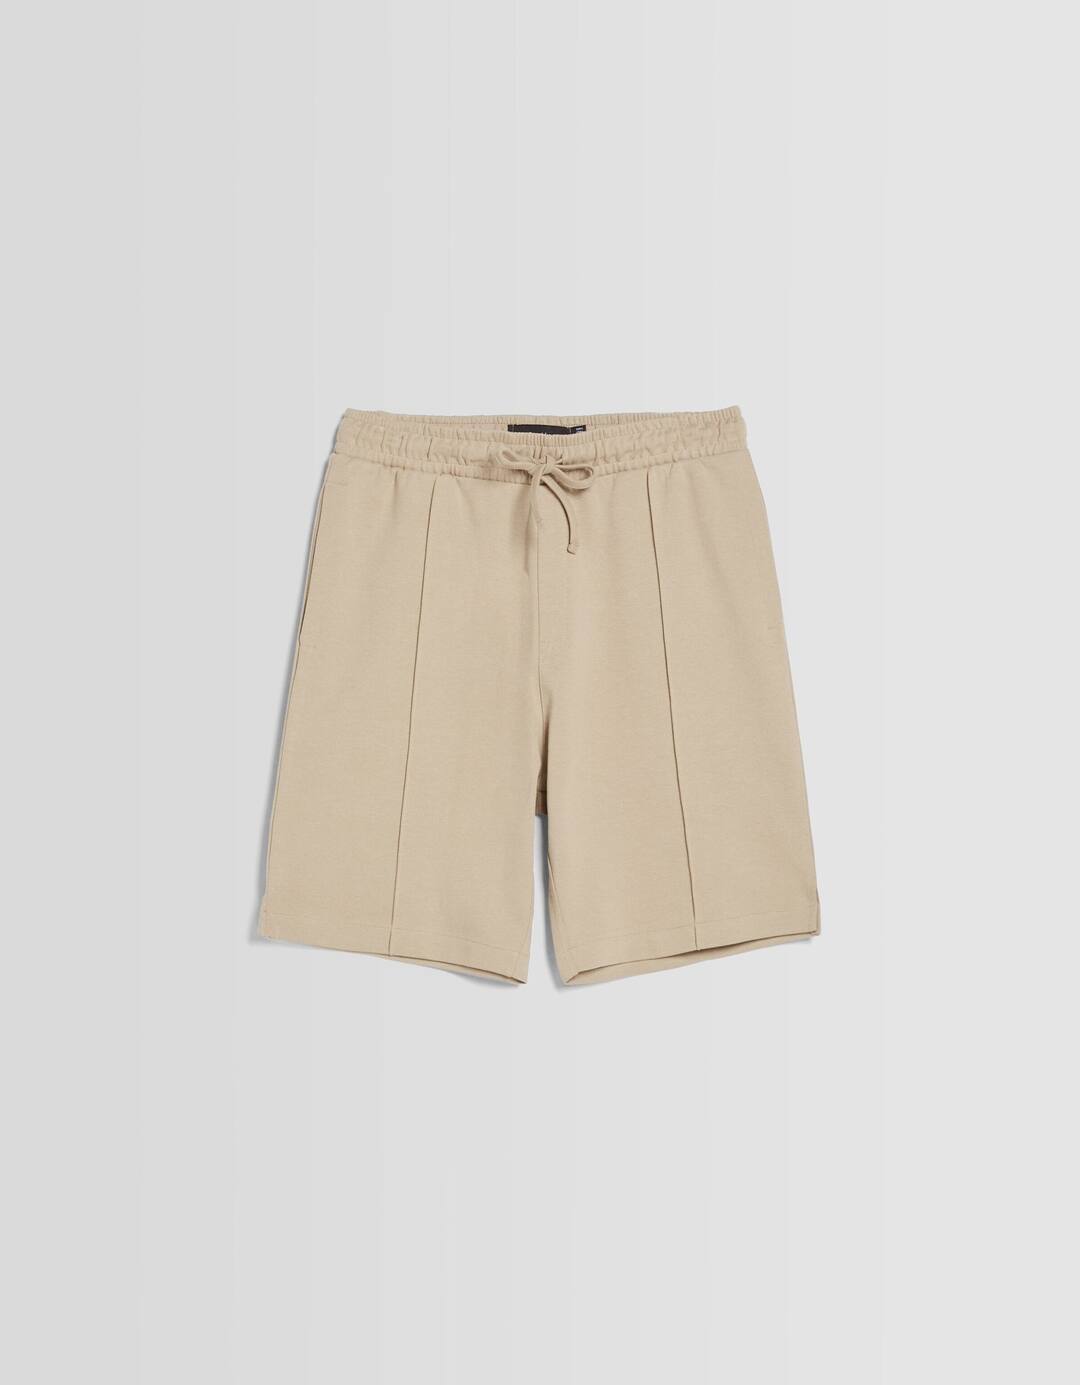 Interlock plush Bermuda shorts